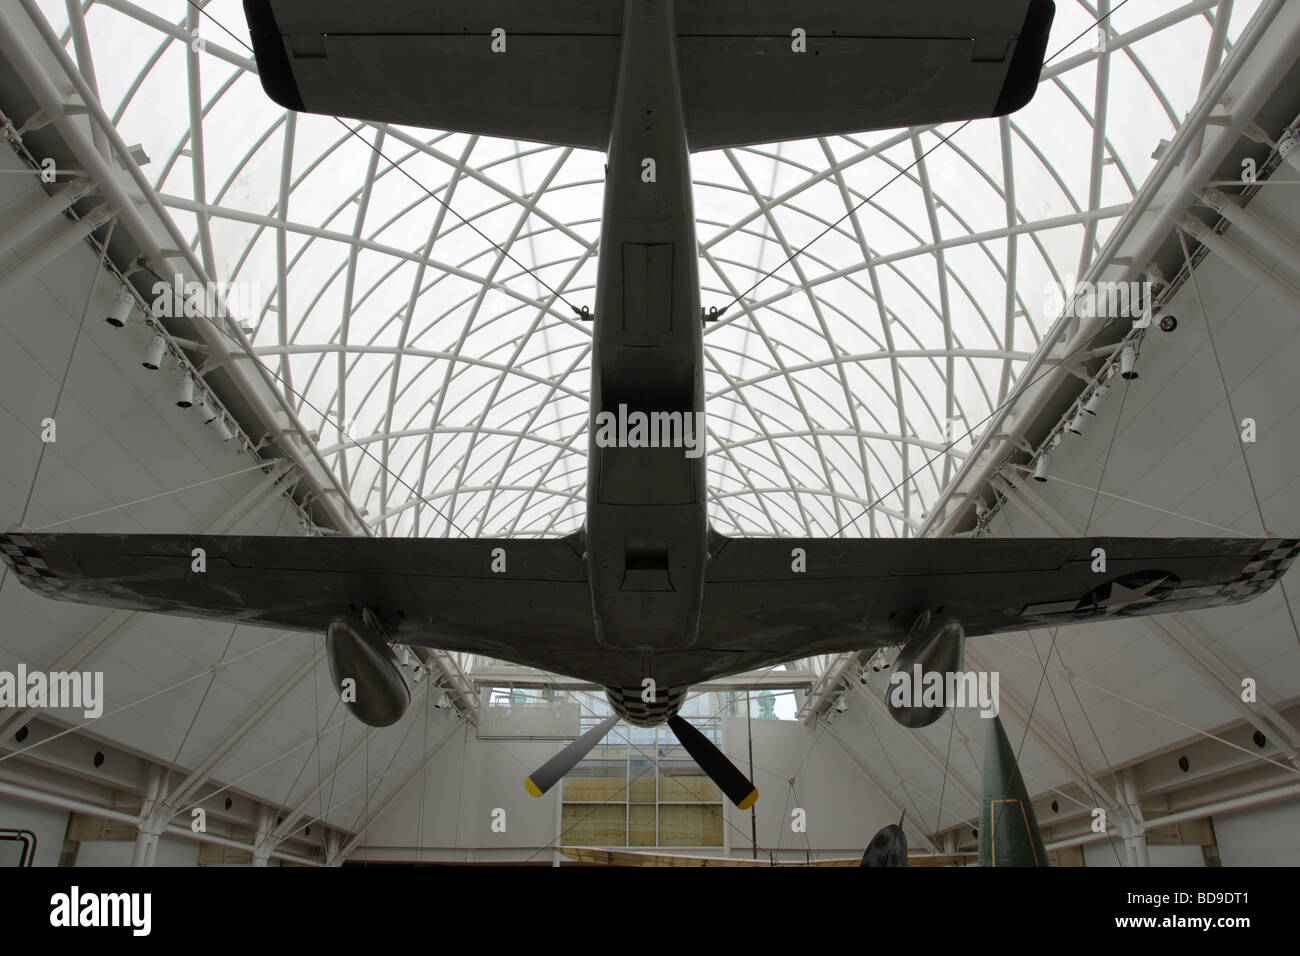 Bajo Ángulo,aspecto centralizado de la p51-d mustang avión actualmente mostrada en el IWM,Londres. Foto de stock